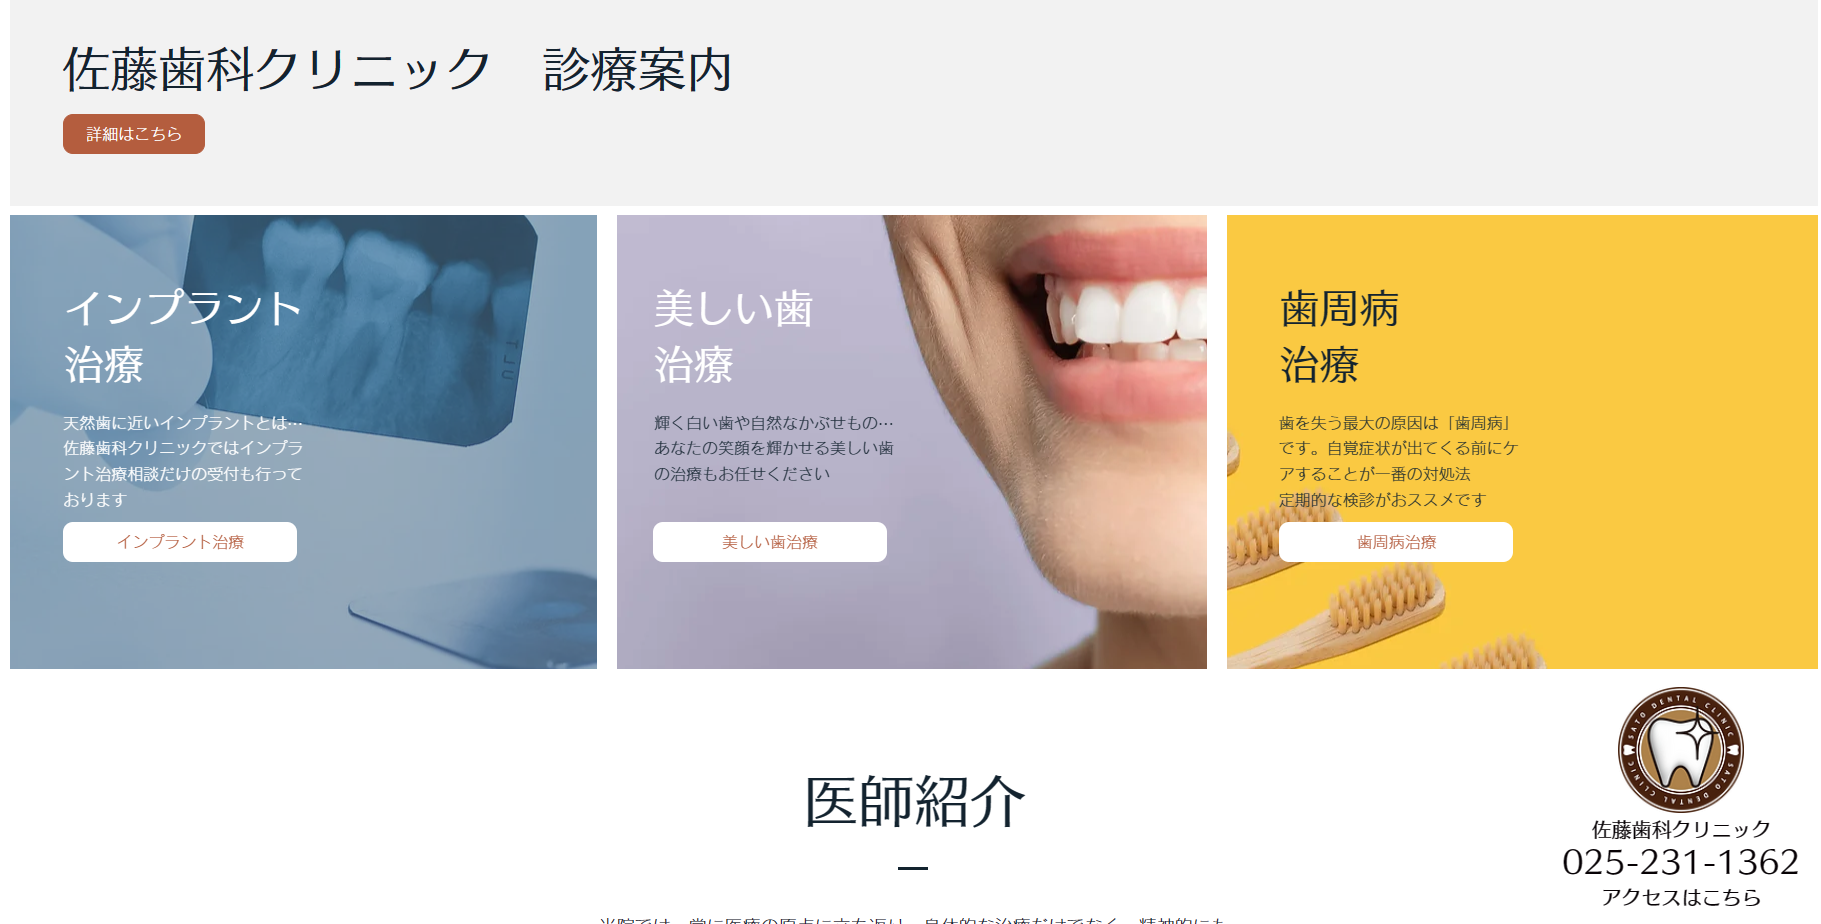 佐藤歯科クリニック 様のホームページ